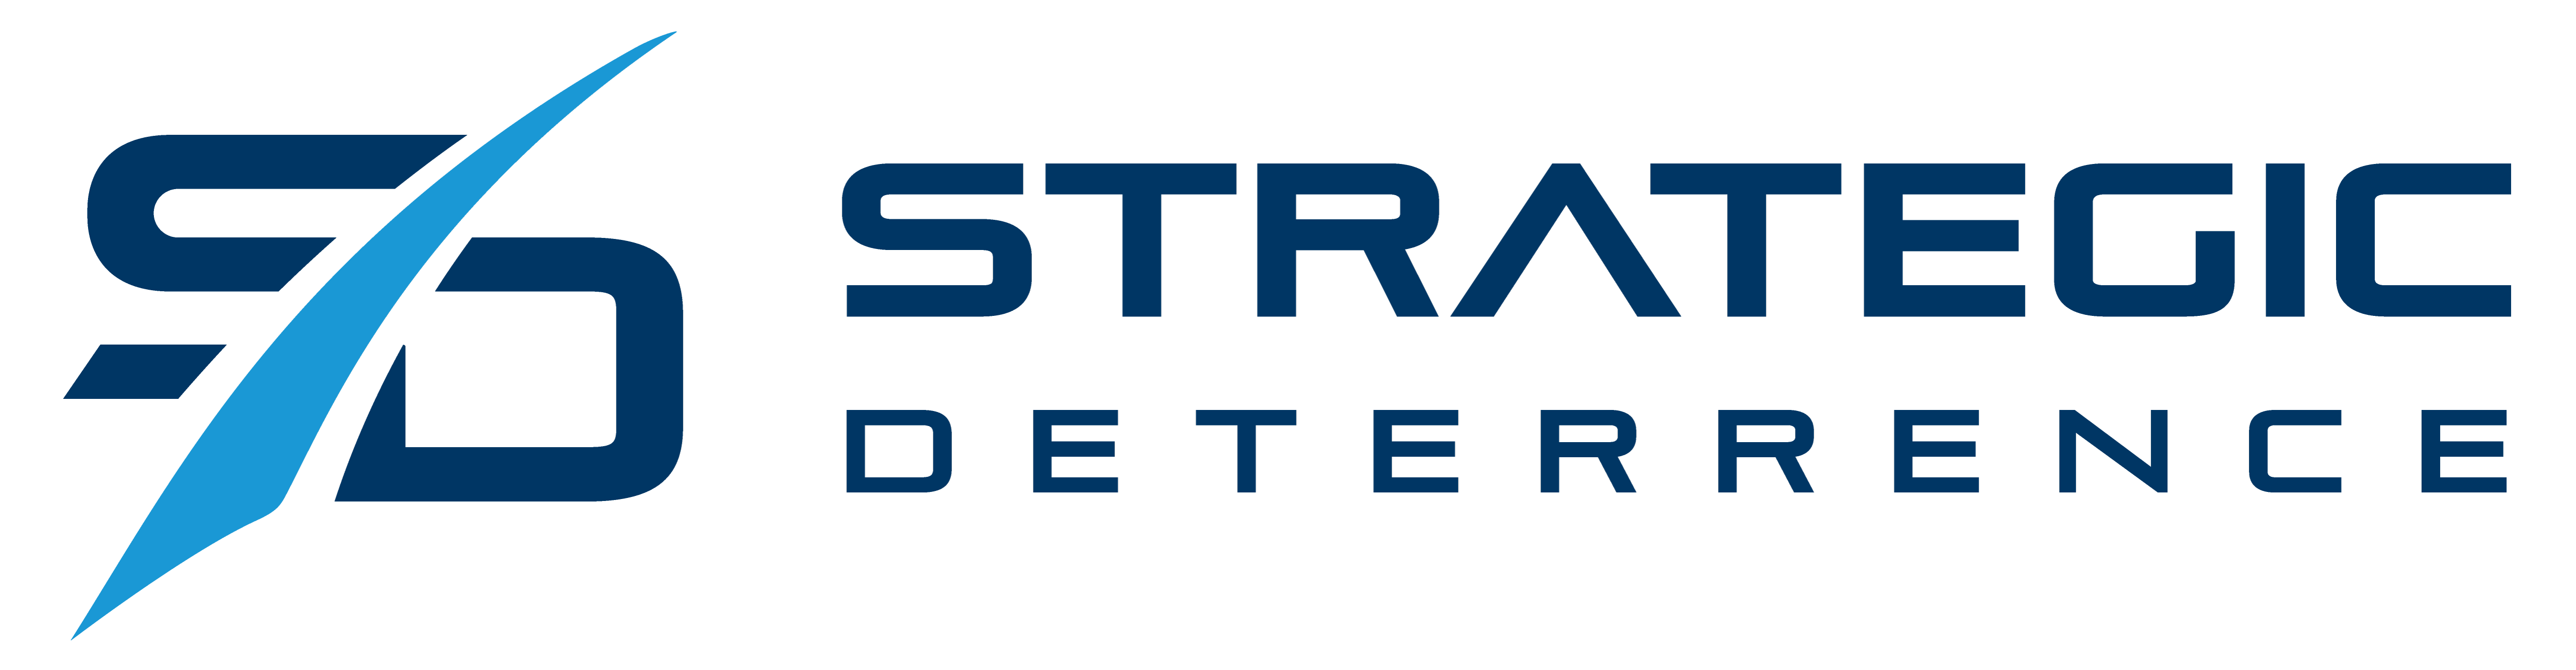 Strategic Deterrence logo